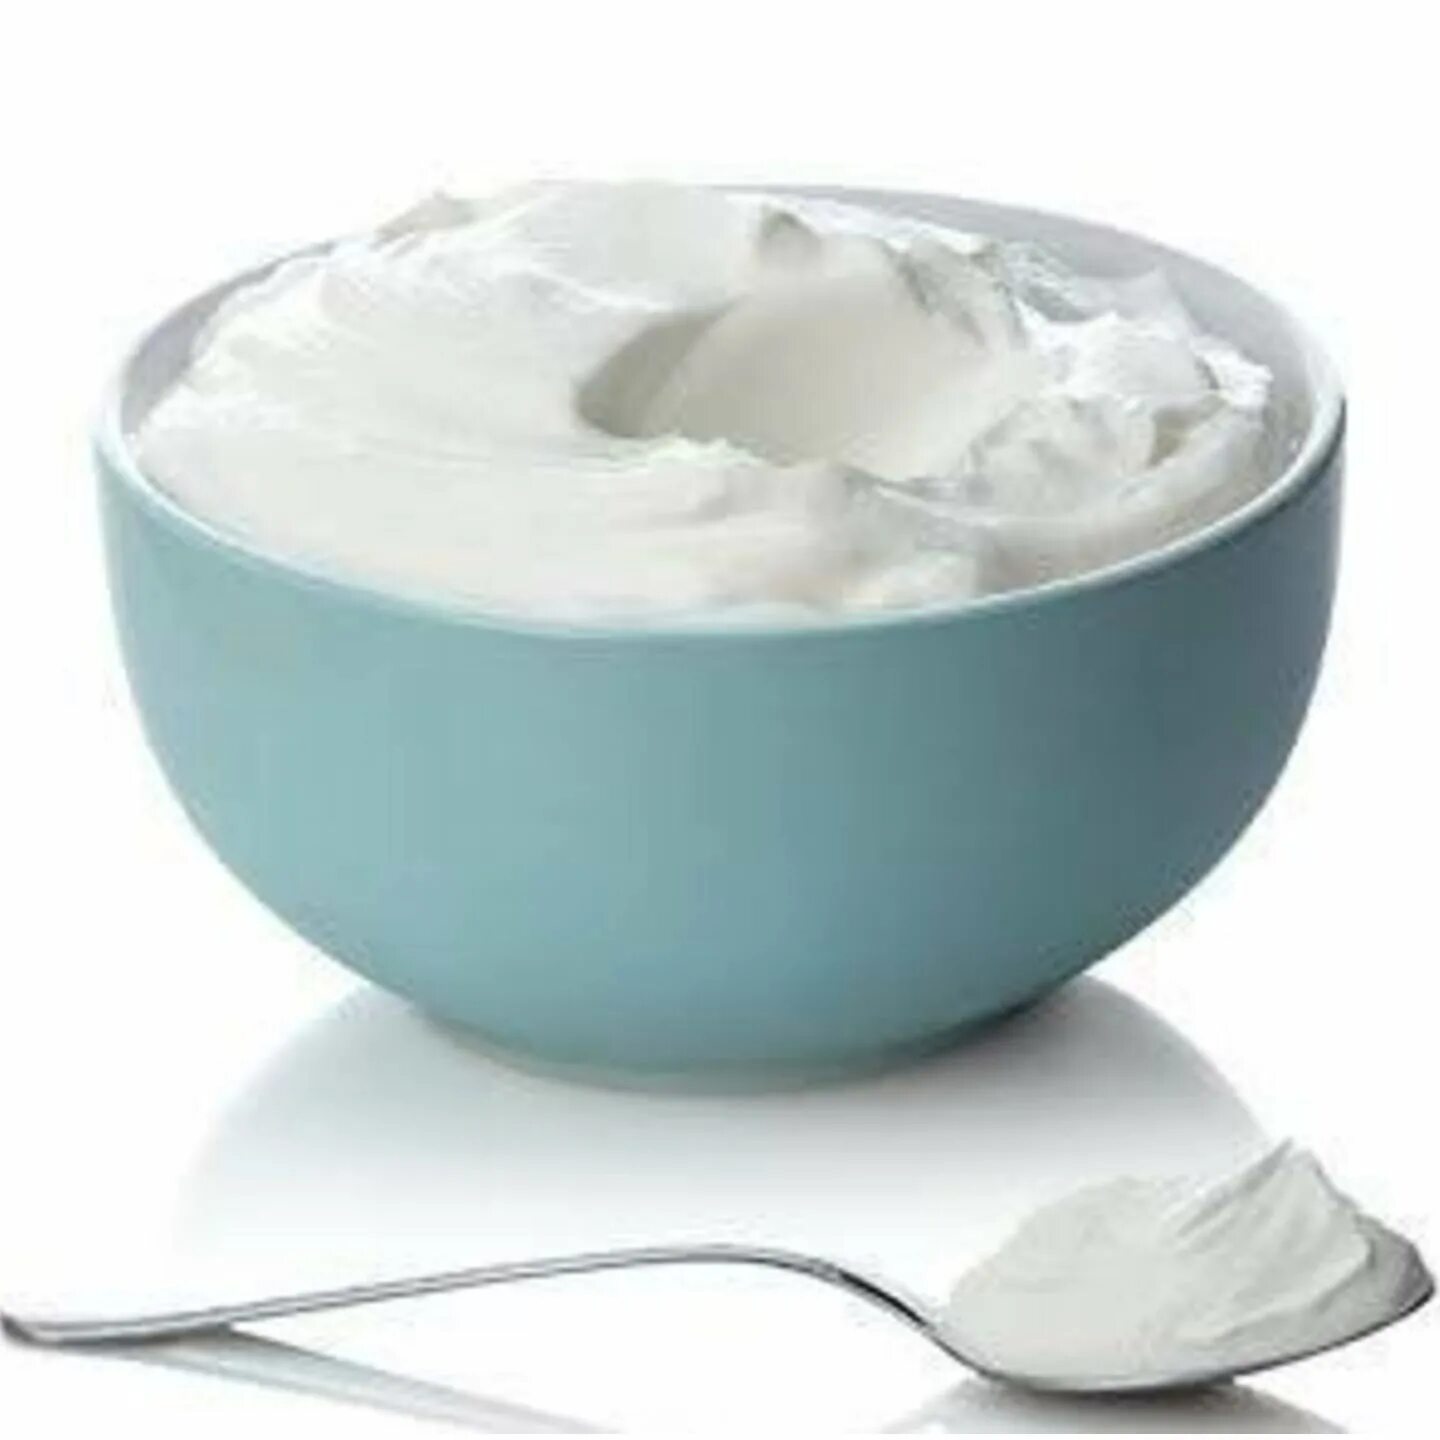 Польза греческого йогурта. Йогурт. Сметана. Йогурт на белом фоне. Сметана сервировка.